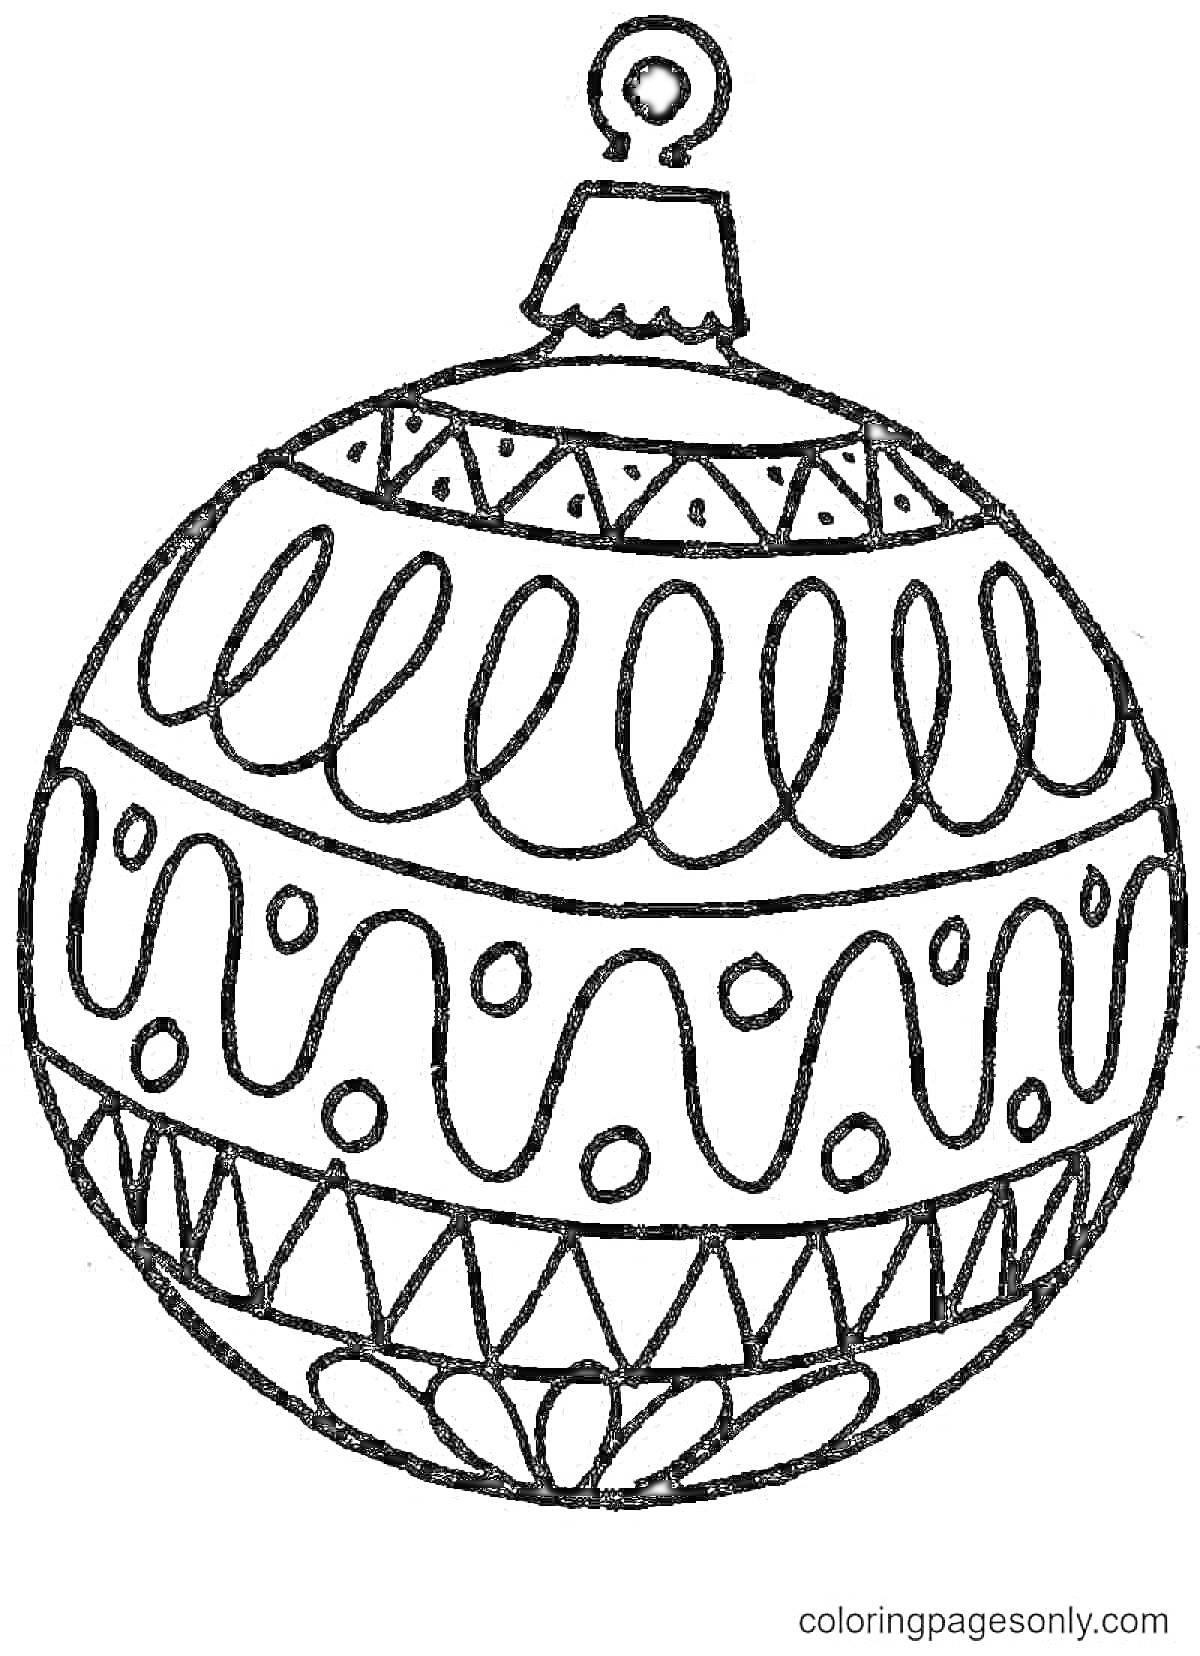 Раскраска Елочный шар с орнаментом, волнистые линии и геометрические узоры